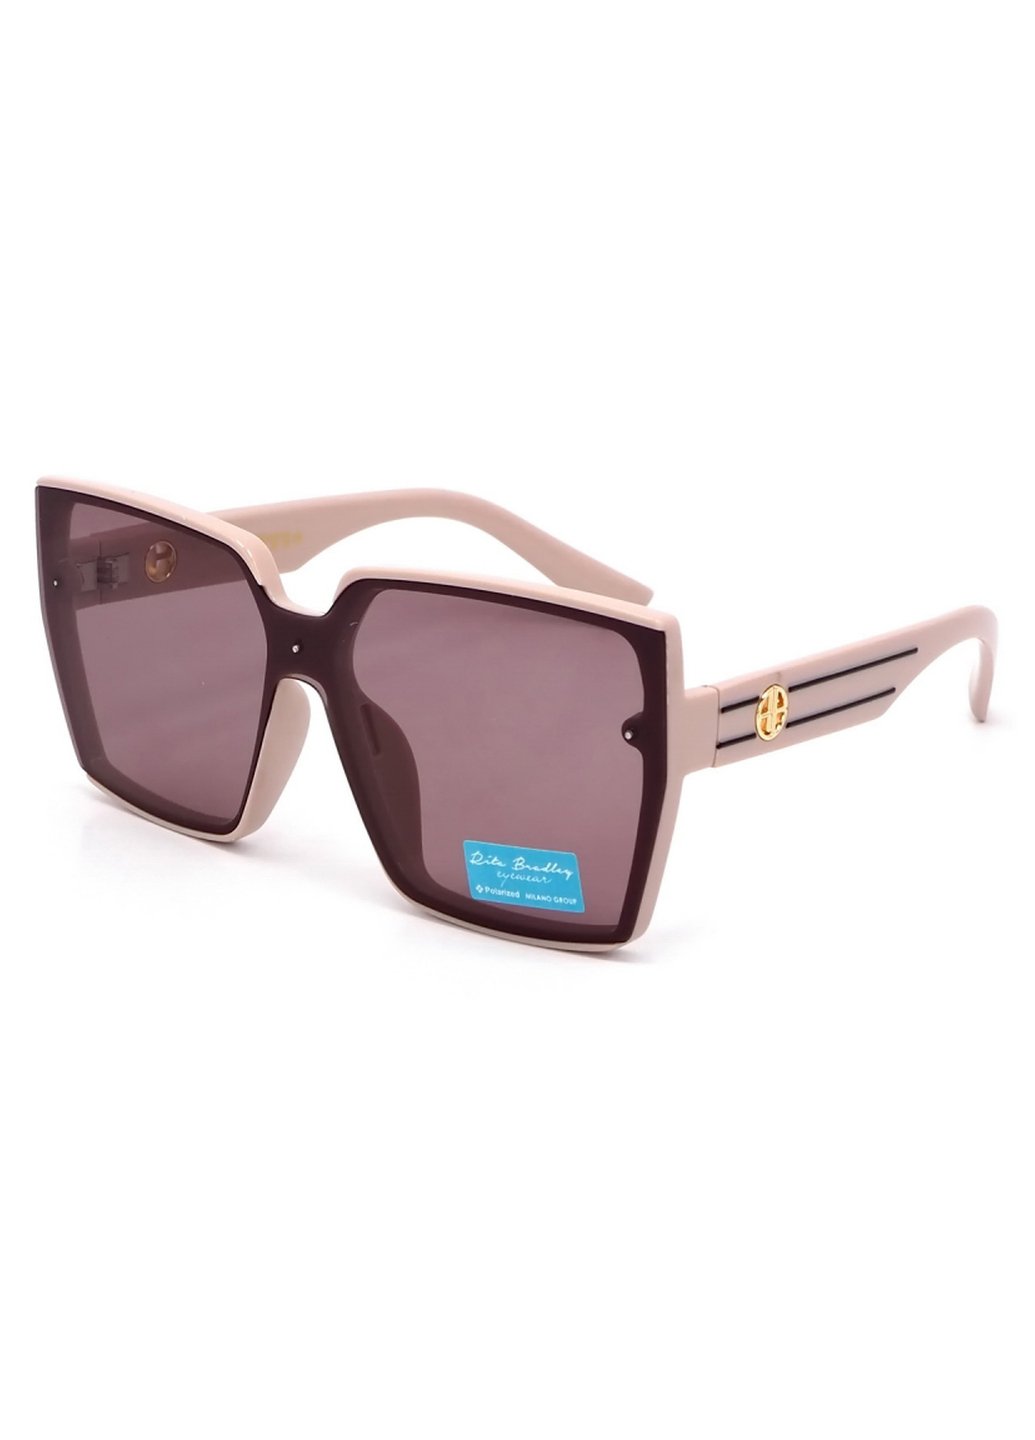 Купить Женские солнцезащитные очки Rita Bradley с поляризацией RB733 112091 в интернет-магазине